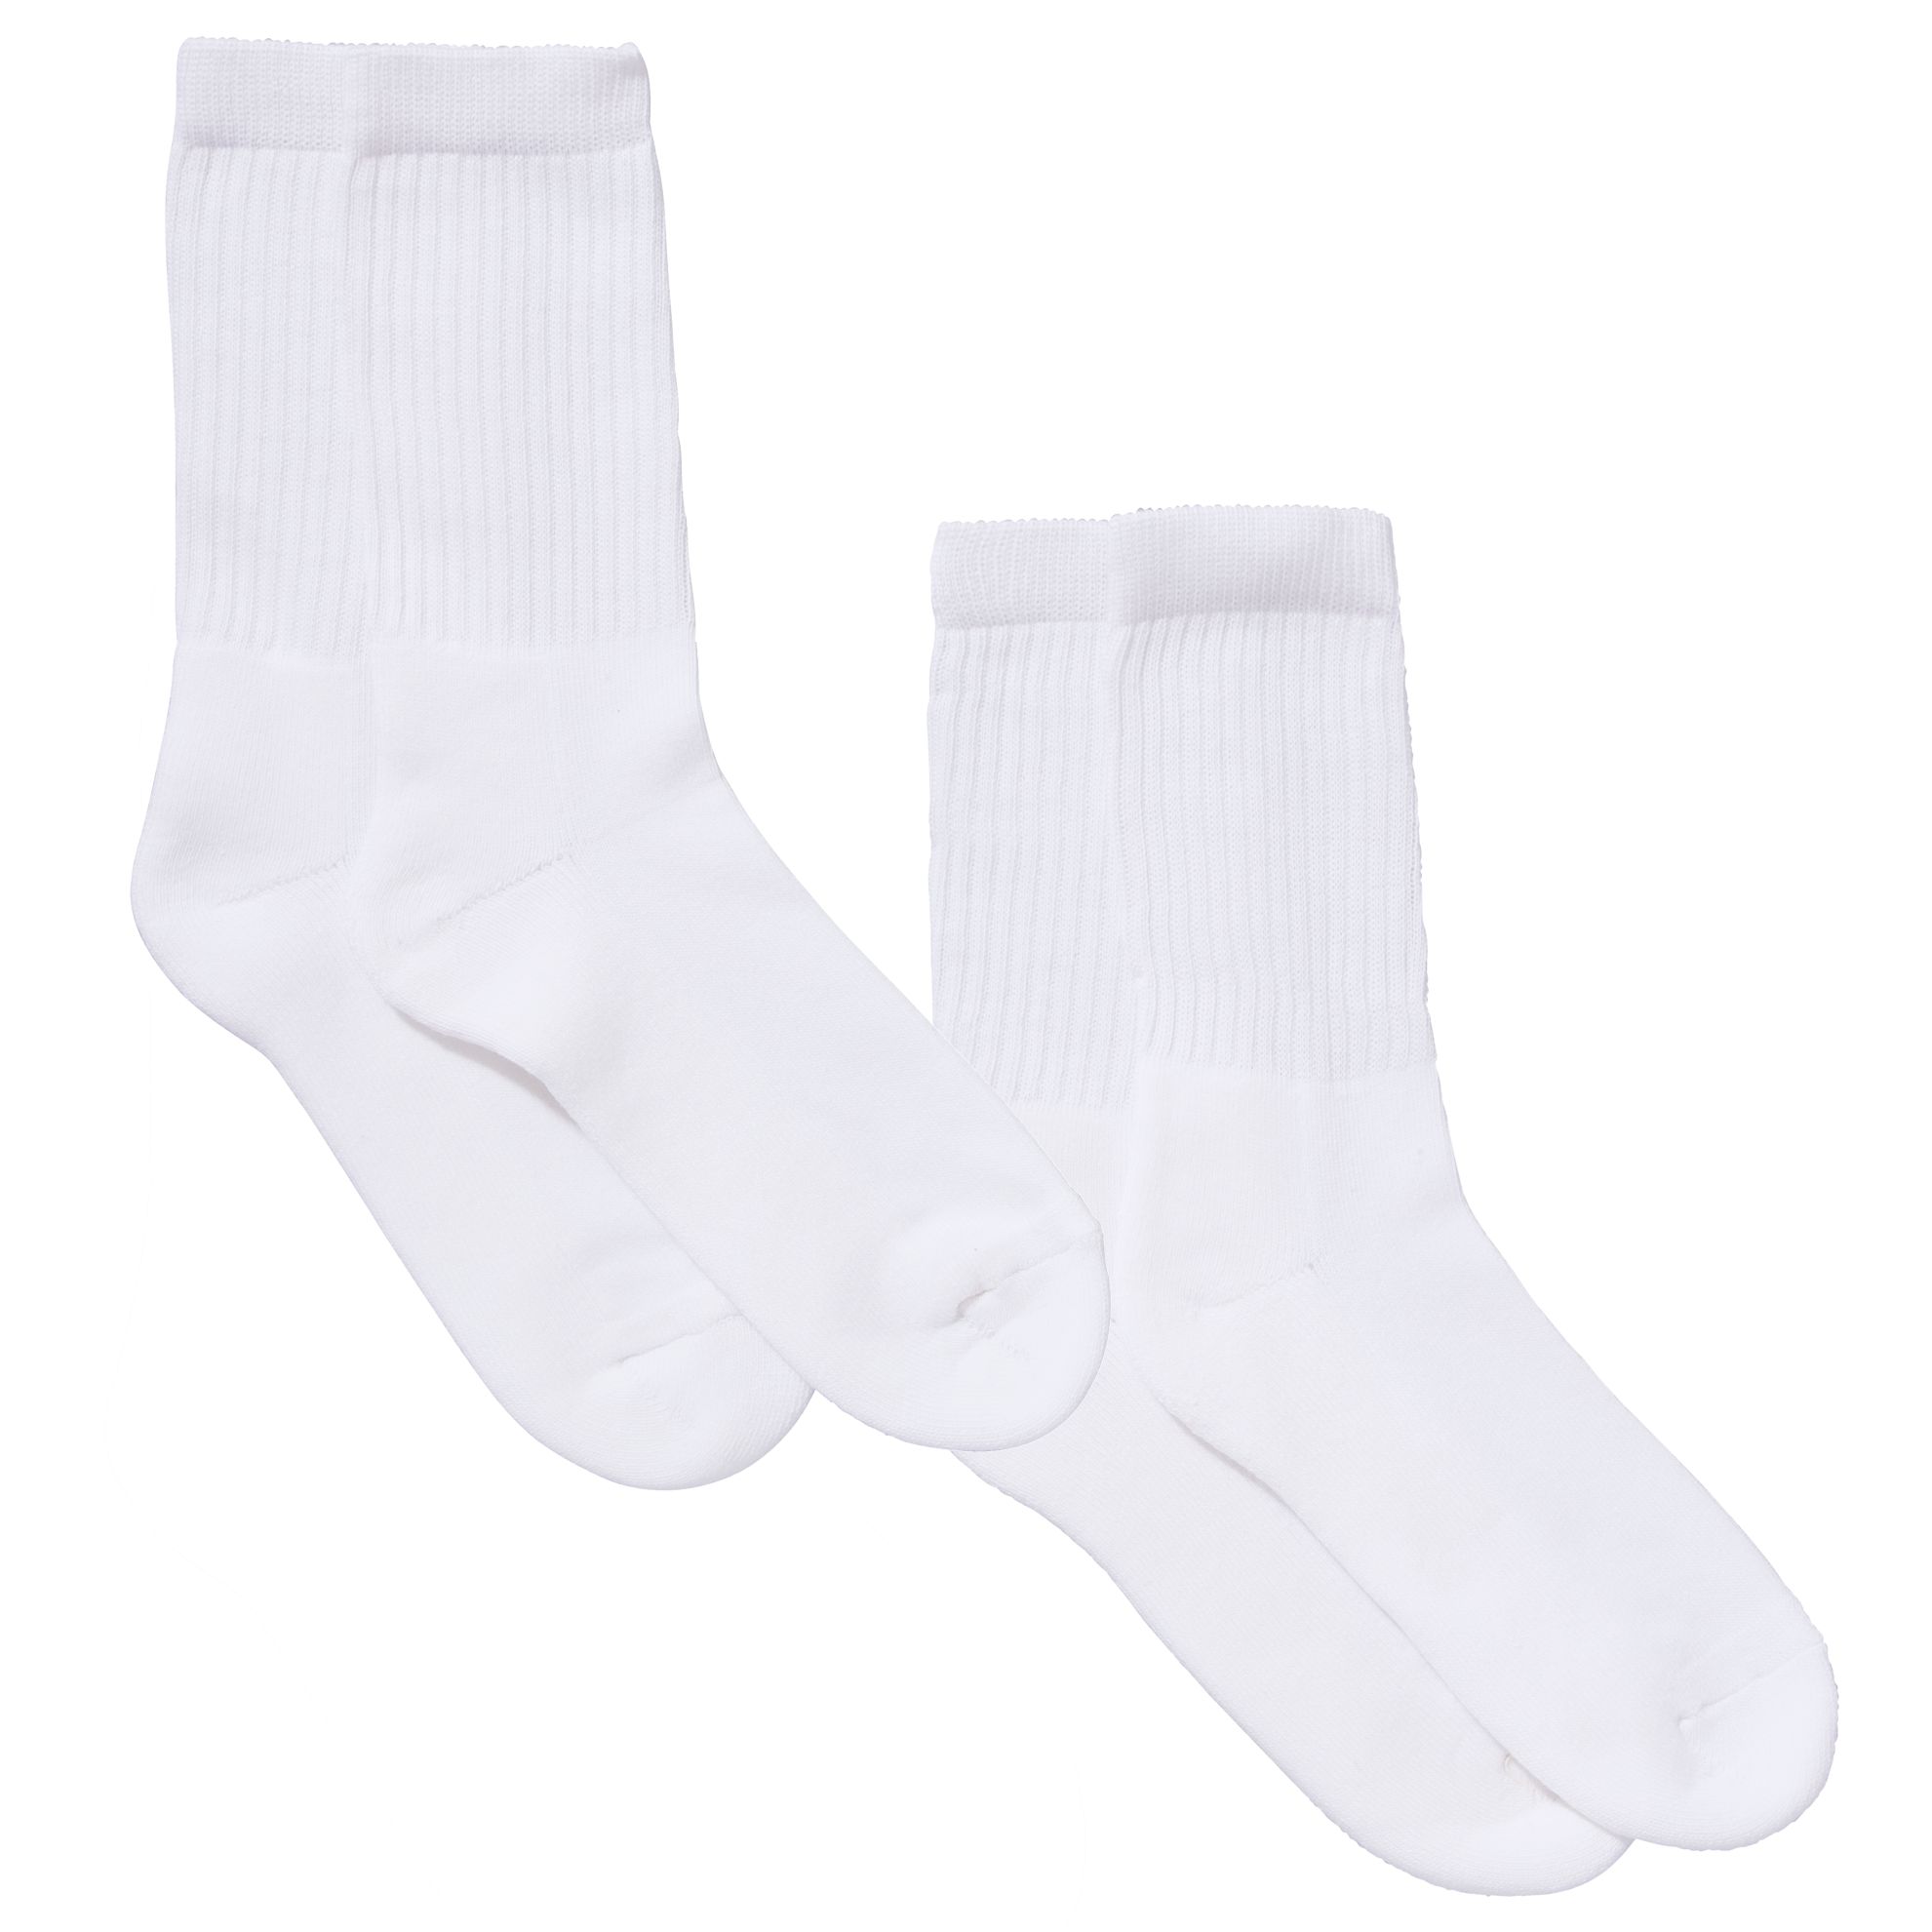 John Lewis Unisex Sports Socks, Pack of 2, White